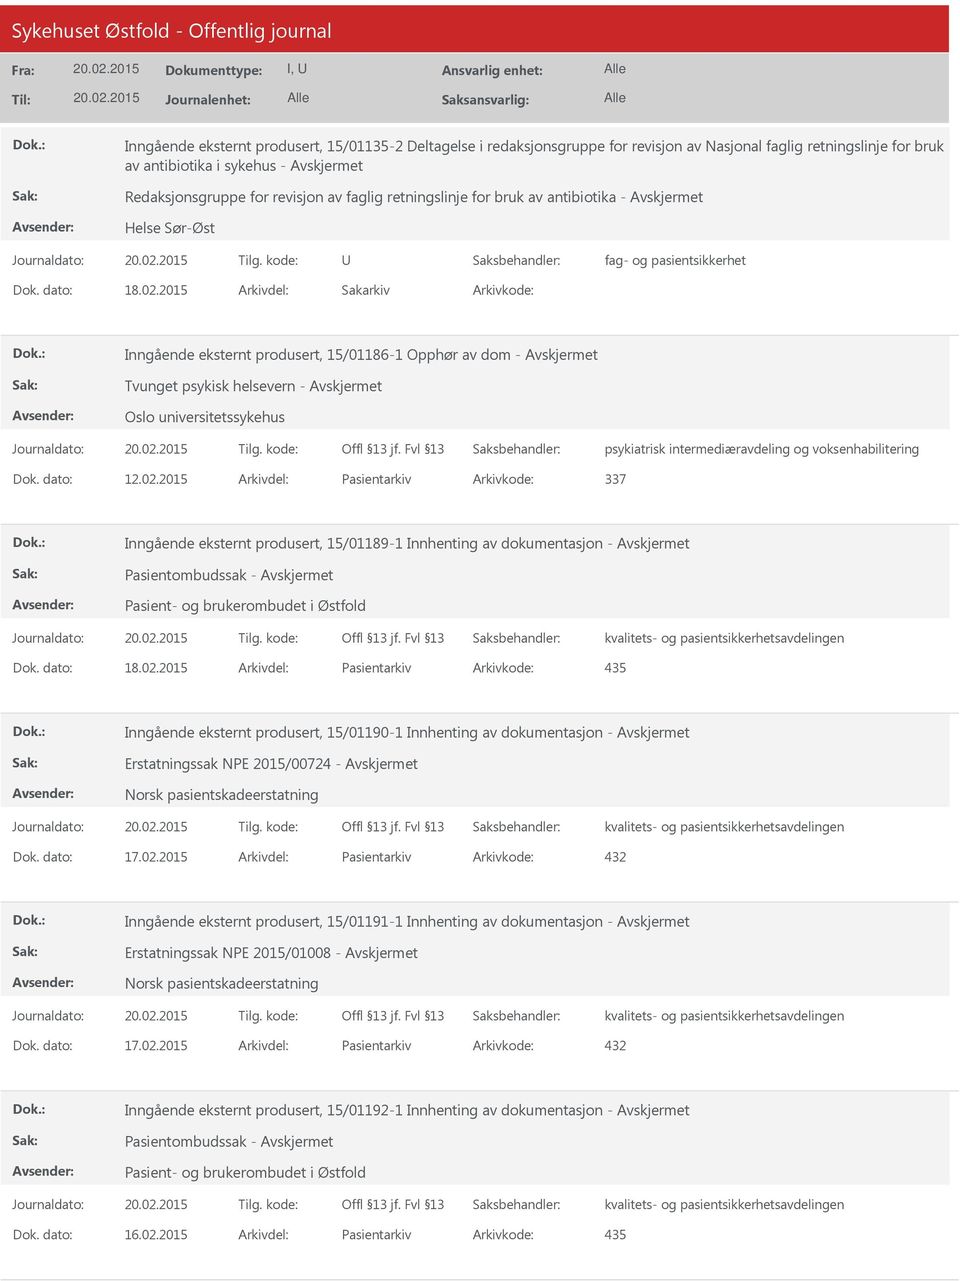 2015 Arkivdel: Sakarkiv Arkivkode: Inngående eksternt produsert, 15/01186-1 Opphør av dom - Tvunget psykisk helsevern - Oslo universitetssykehus psykiatrisk intermediæravdeling og voksenhabilitering